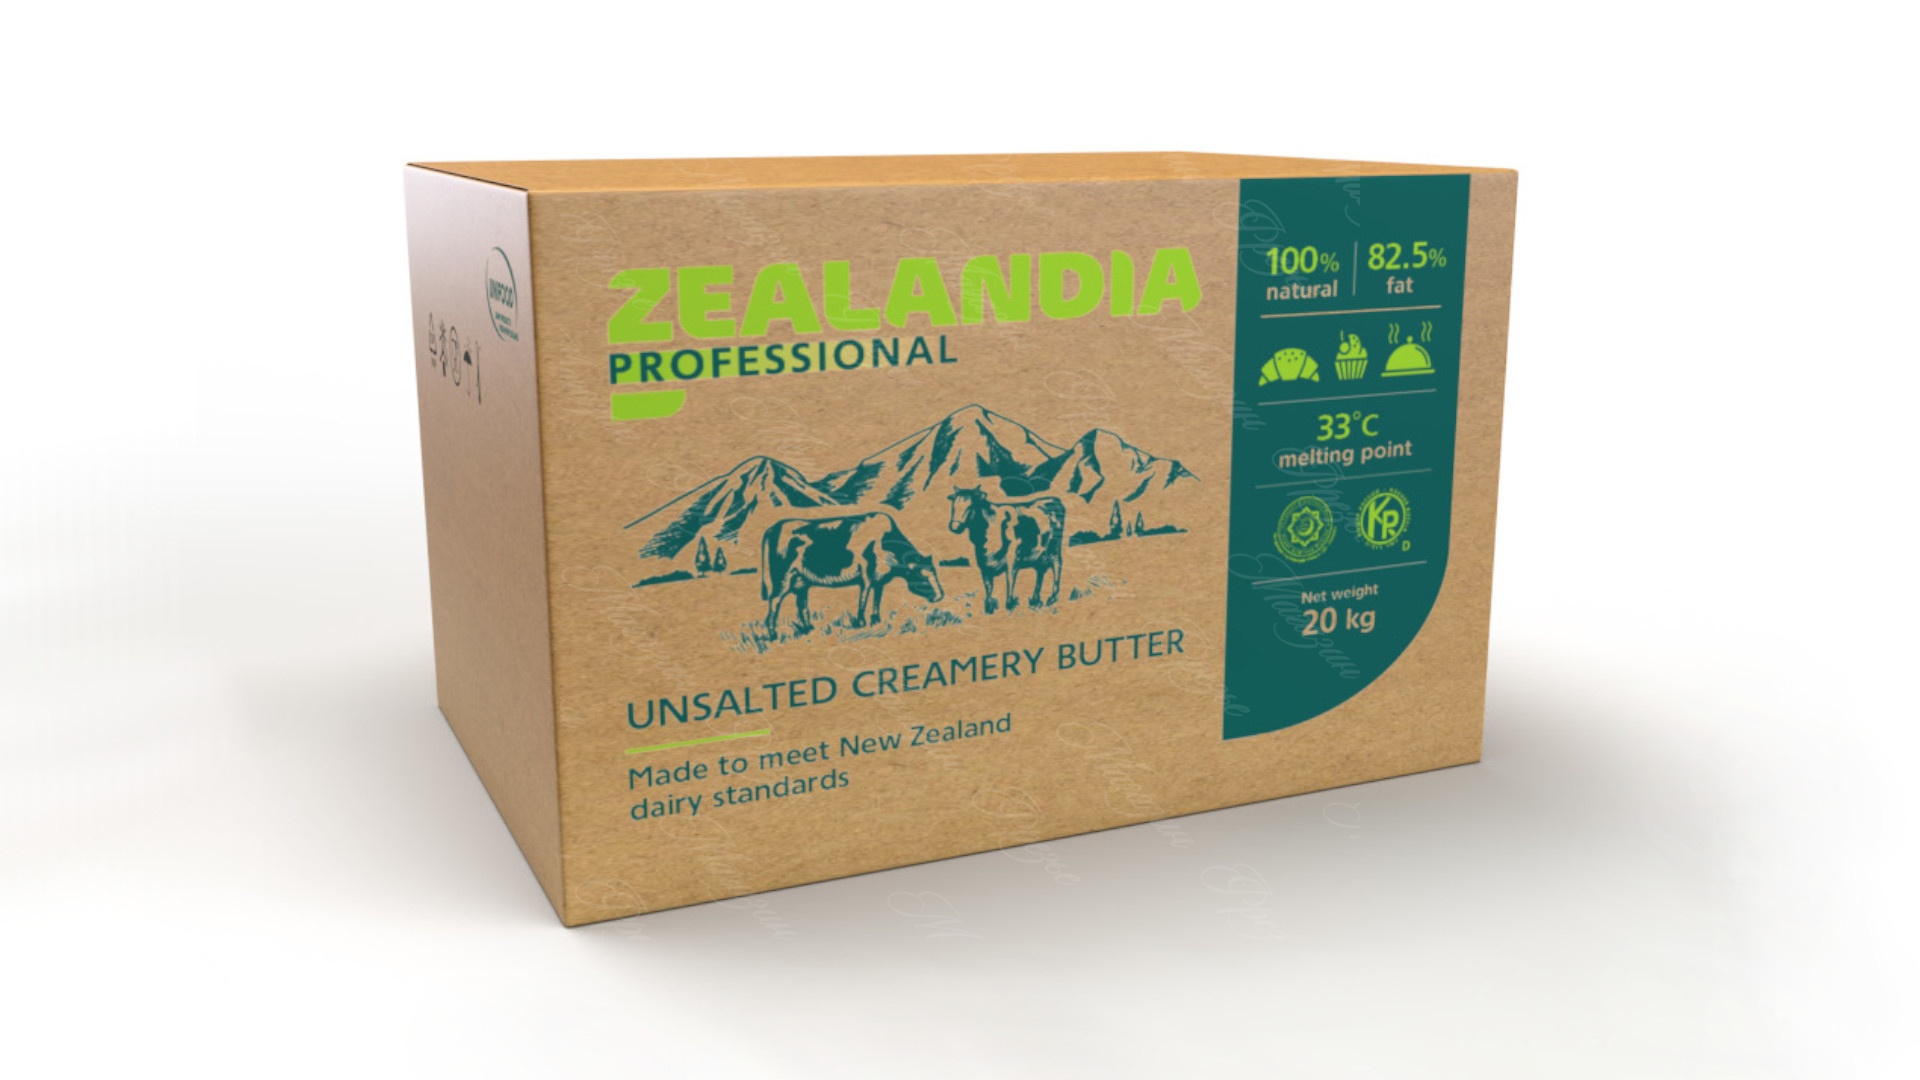 Масло «Традиционное» монолит 20 кг 82,5 % Зеландия Профессиональное / Zealandia Professional от кондитерского магазина Фрезье https://fraisier.ru